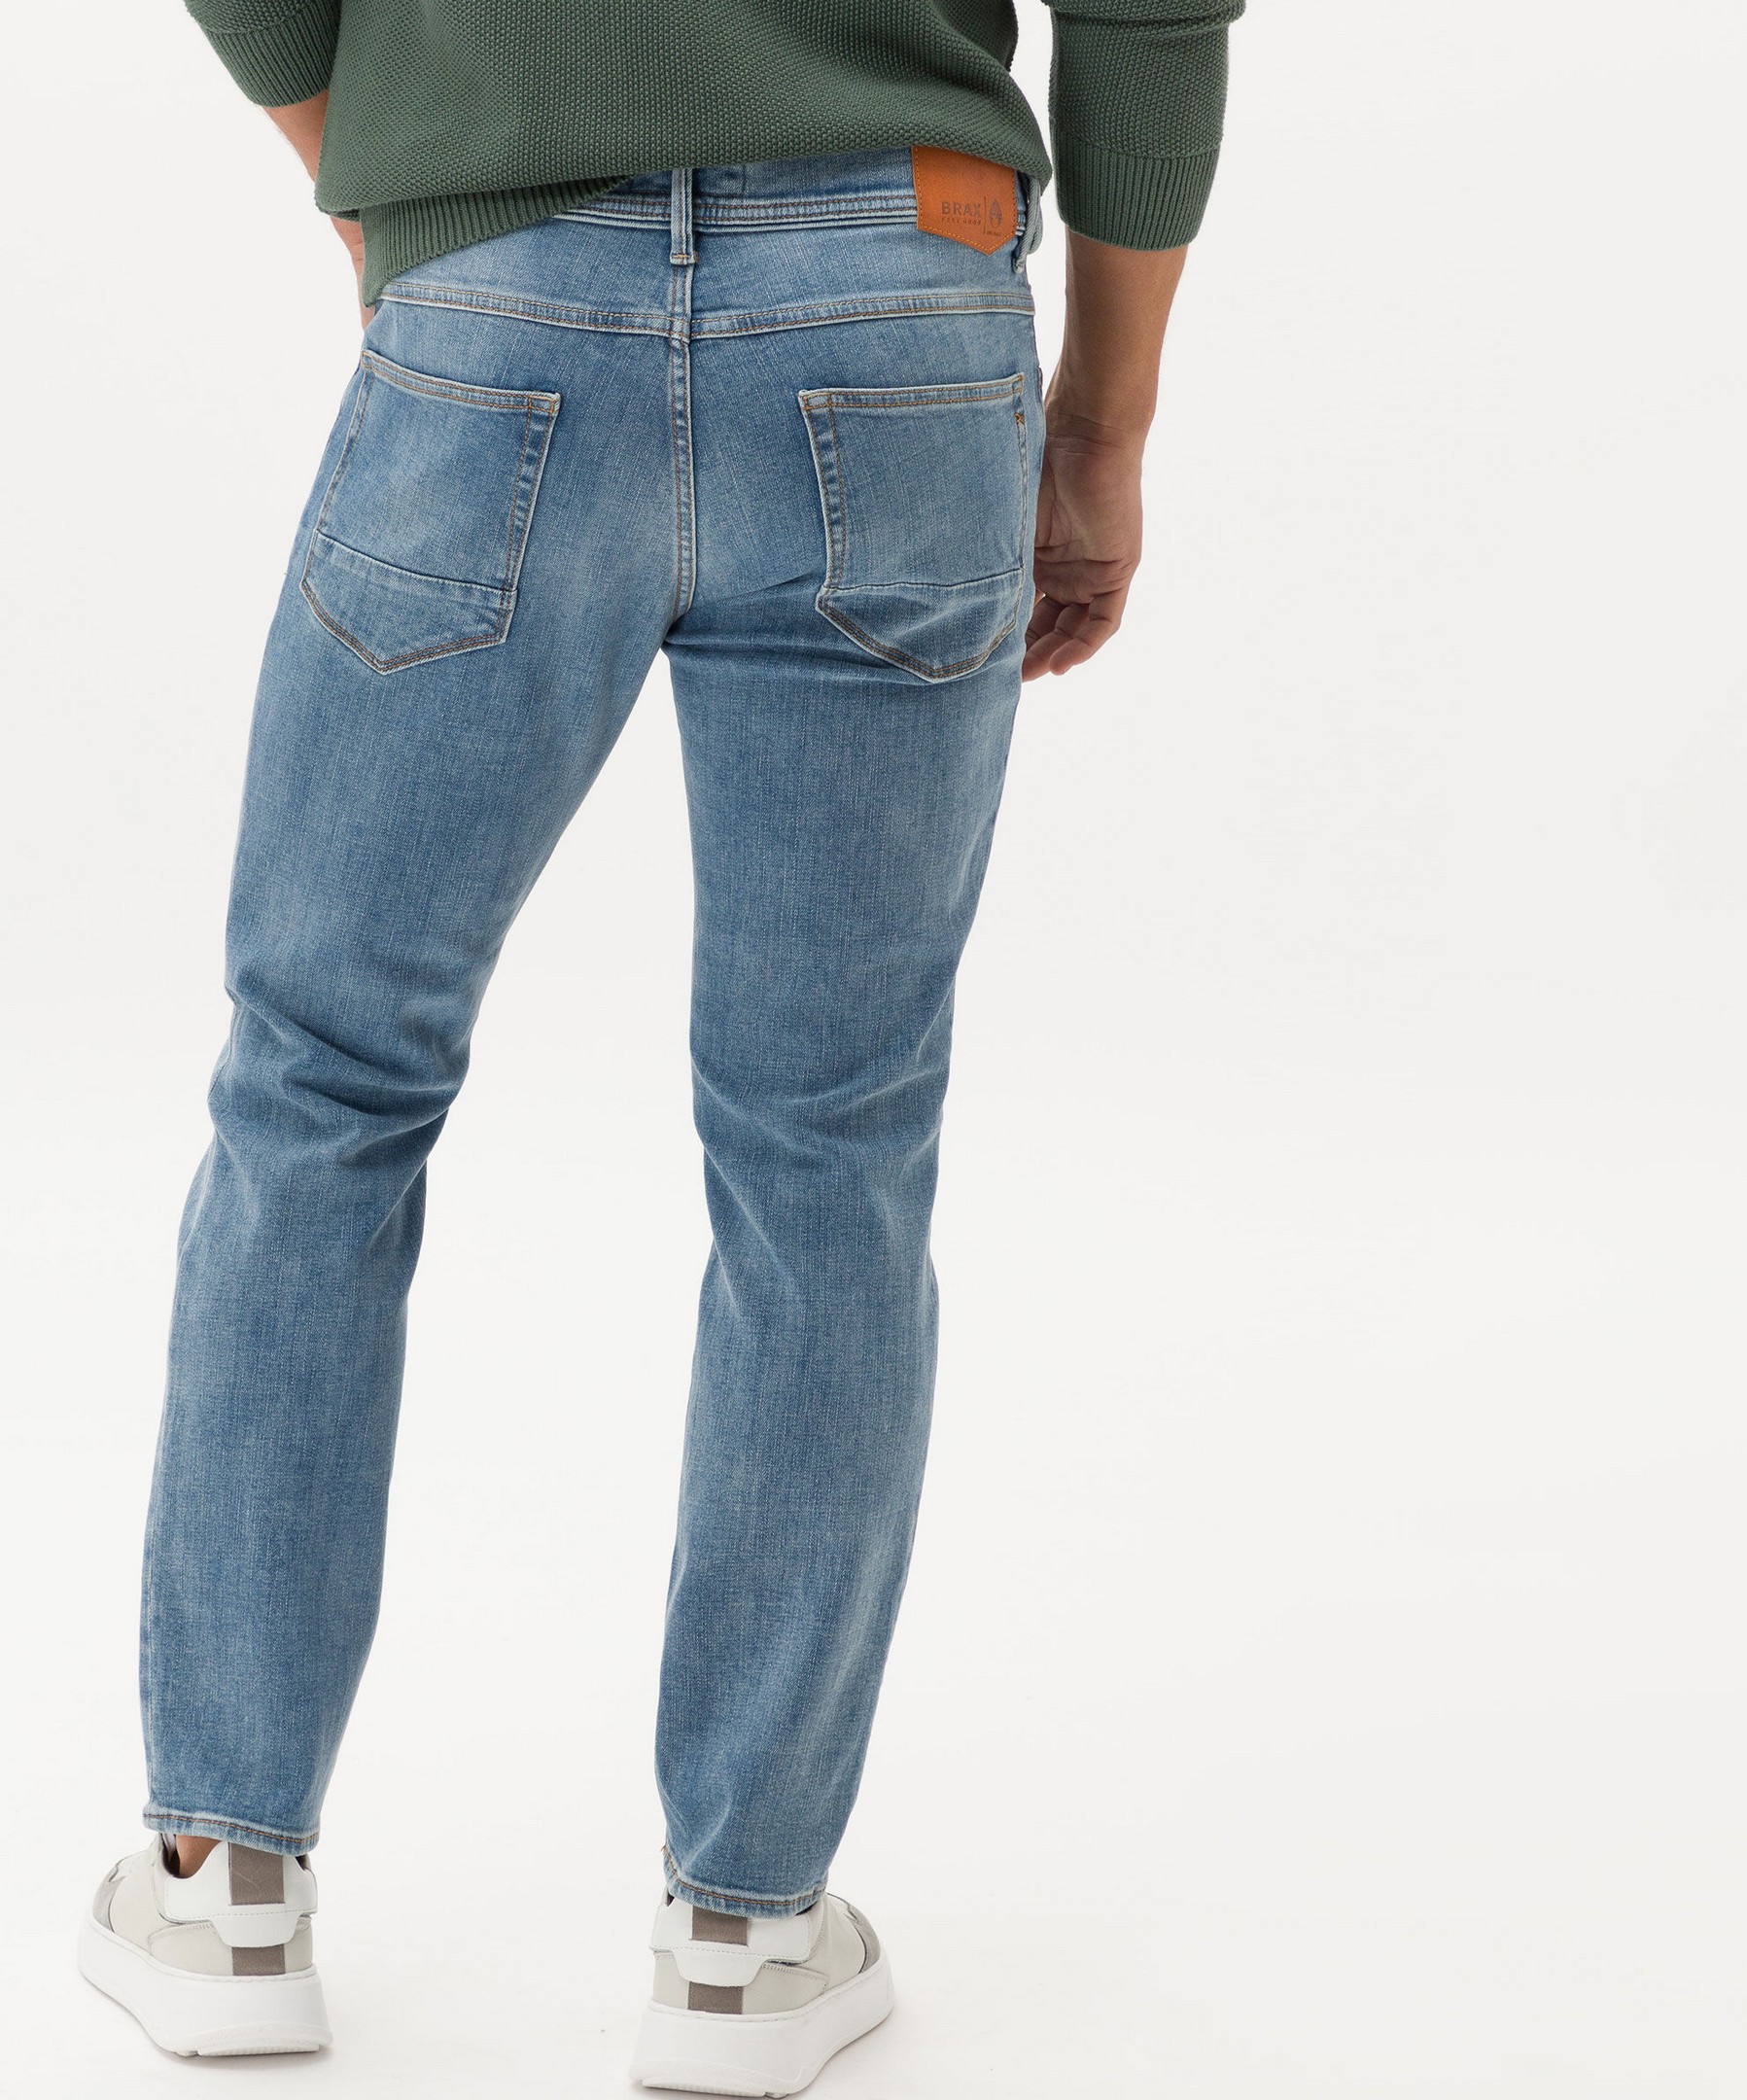 Denim Jeans | Blue Used Vintage Blue Superstretch Fashion Planet 5-Pocket Salt Men\'s Jan Rozing Brax Chris Hi-Flex